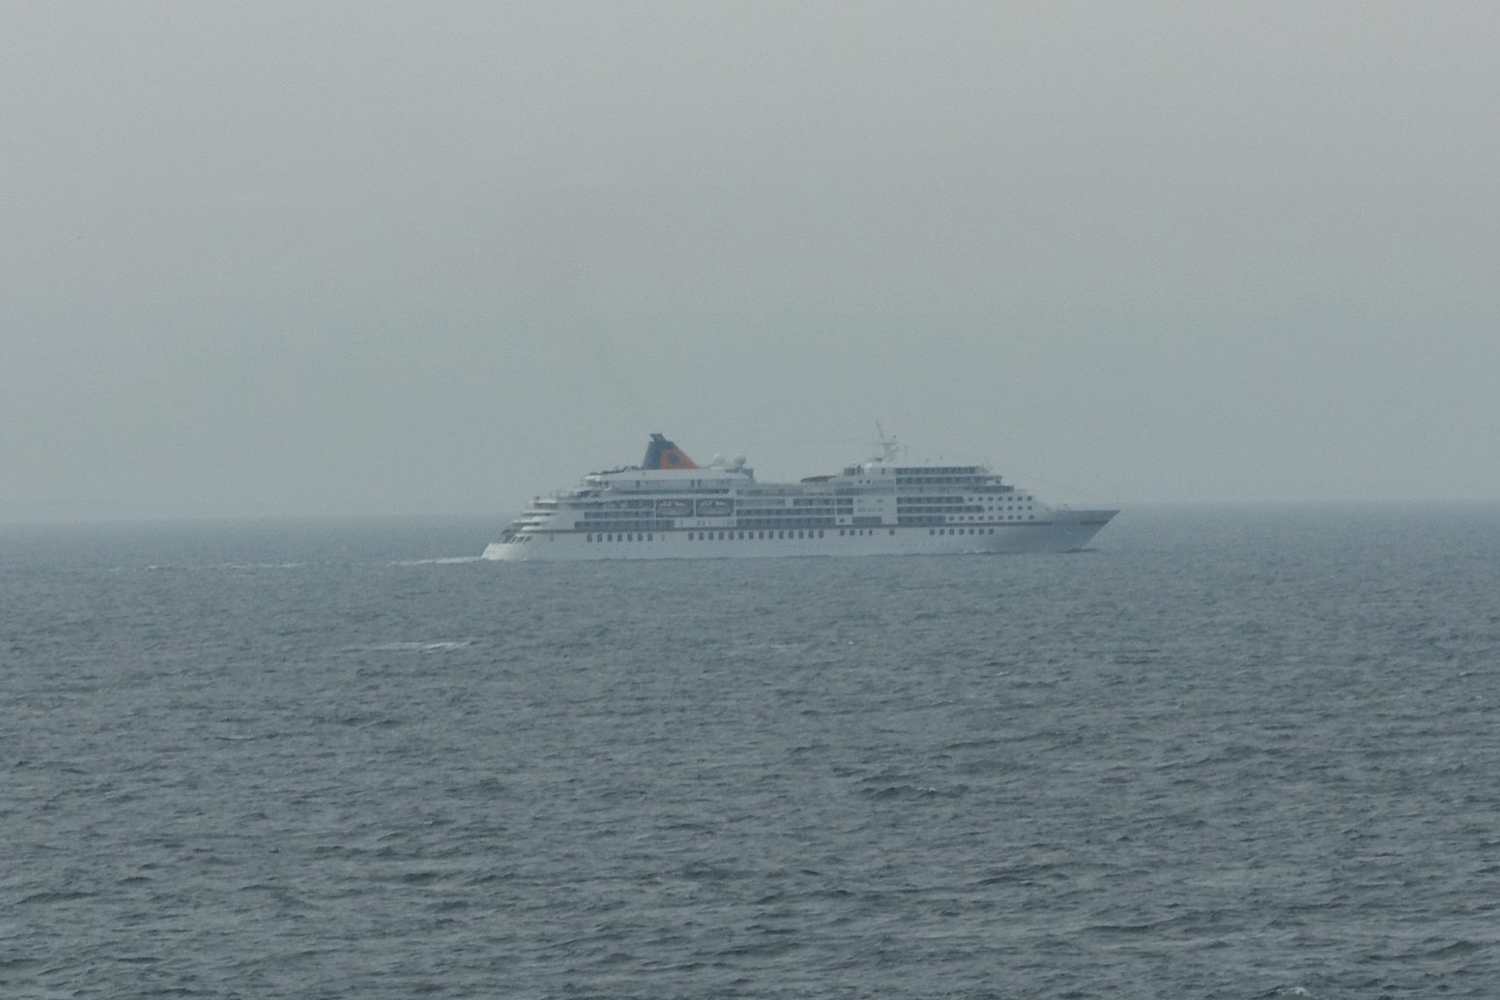 Cruise ship at sea